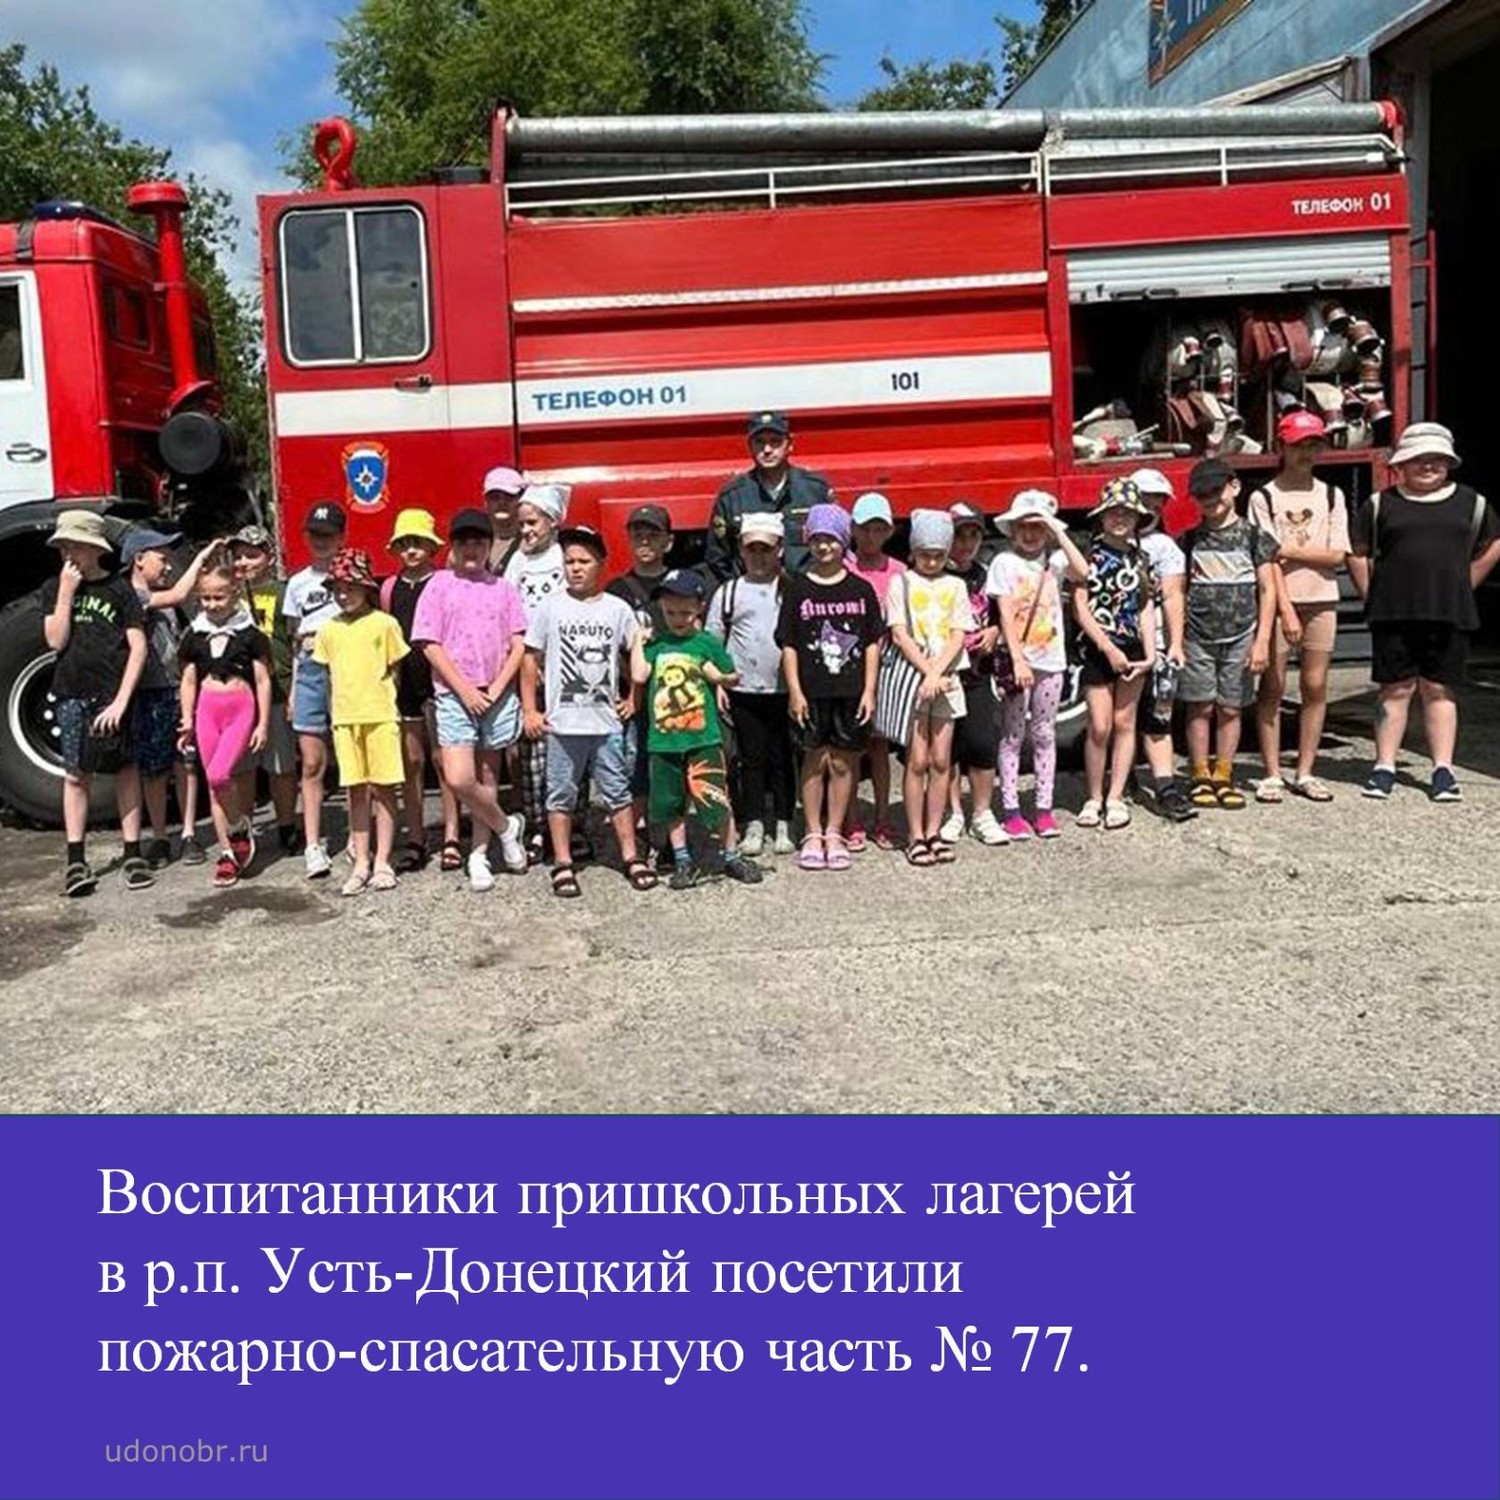 Воспитанники пришкольных лагерей в р.п. Усть-Донецкий посетили пожарно-спасательную часть № 77